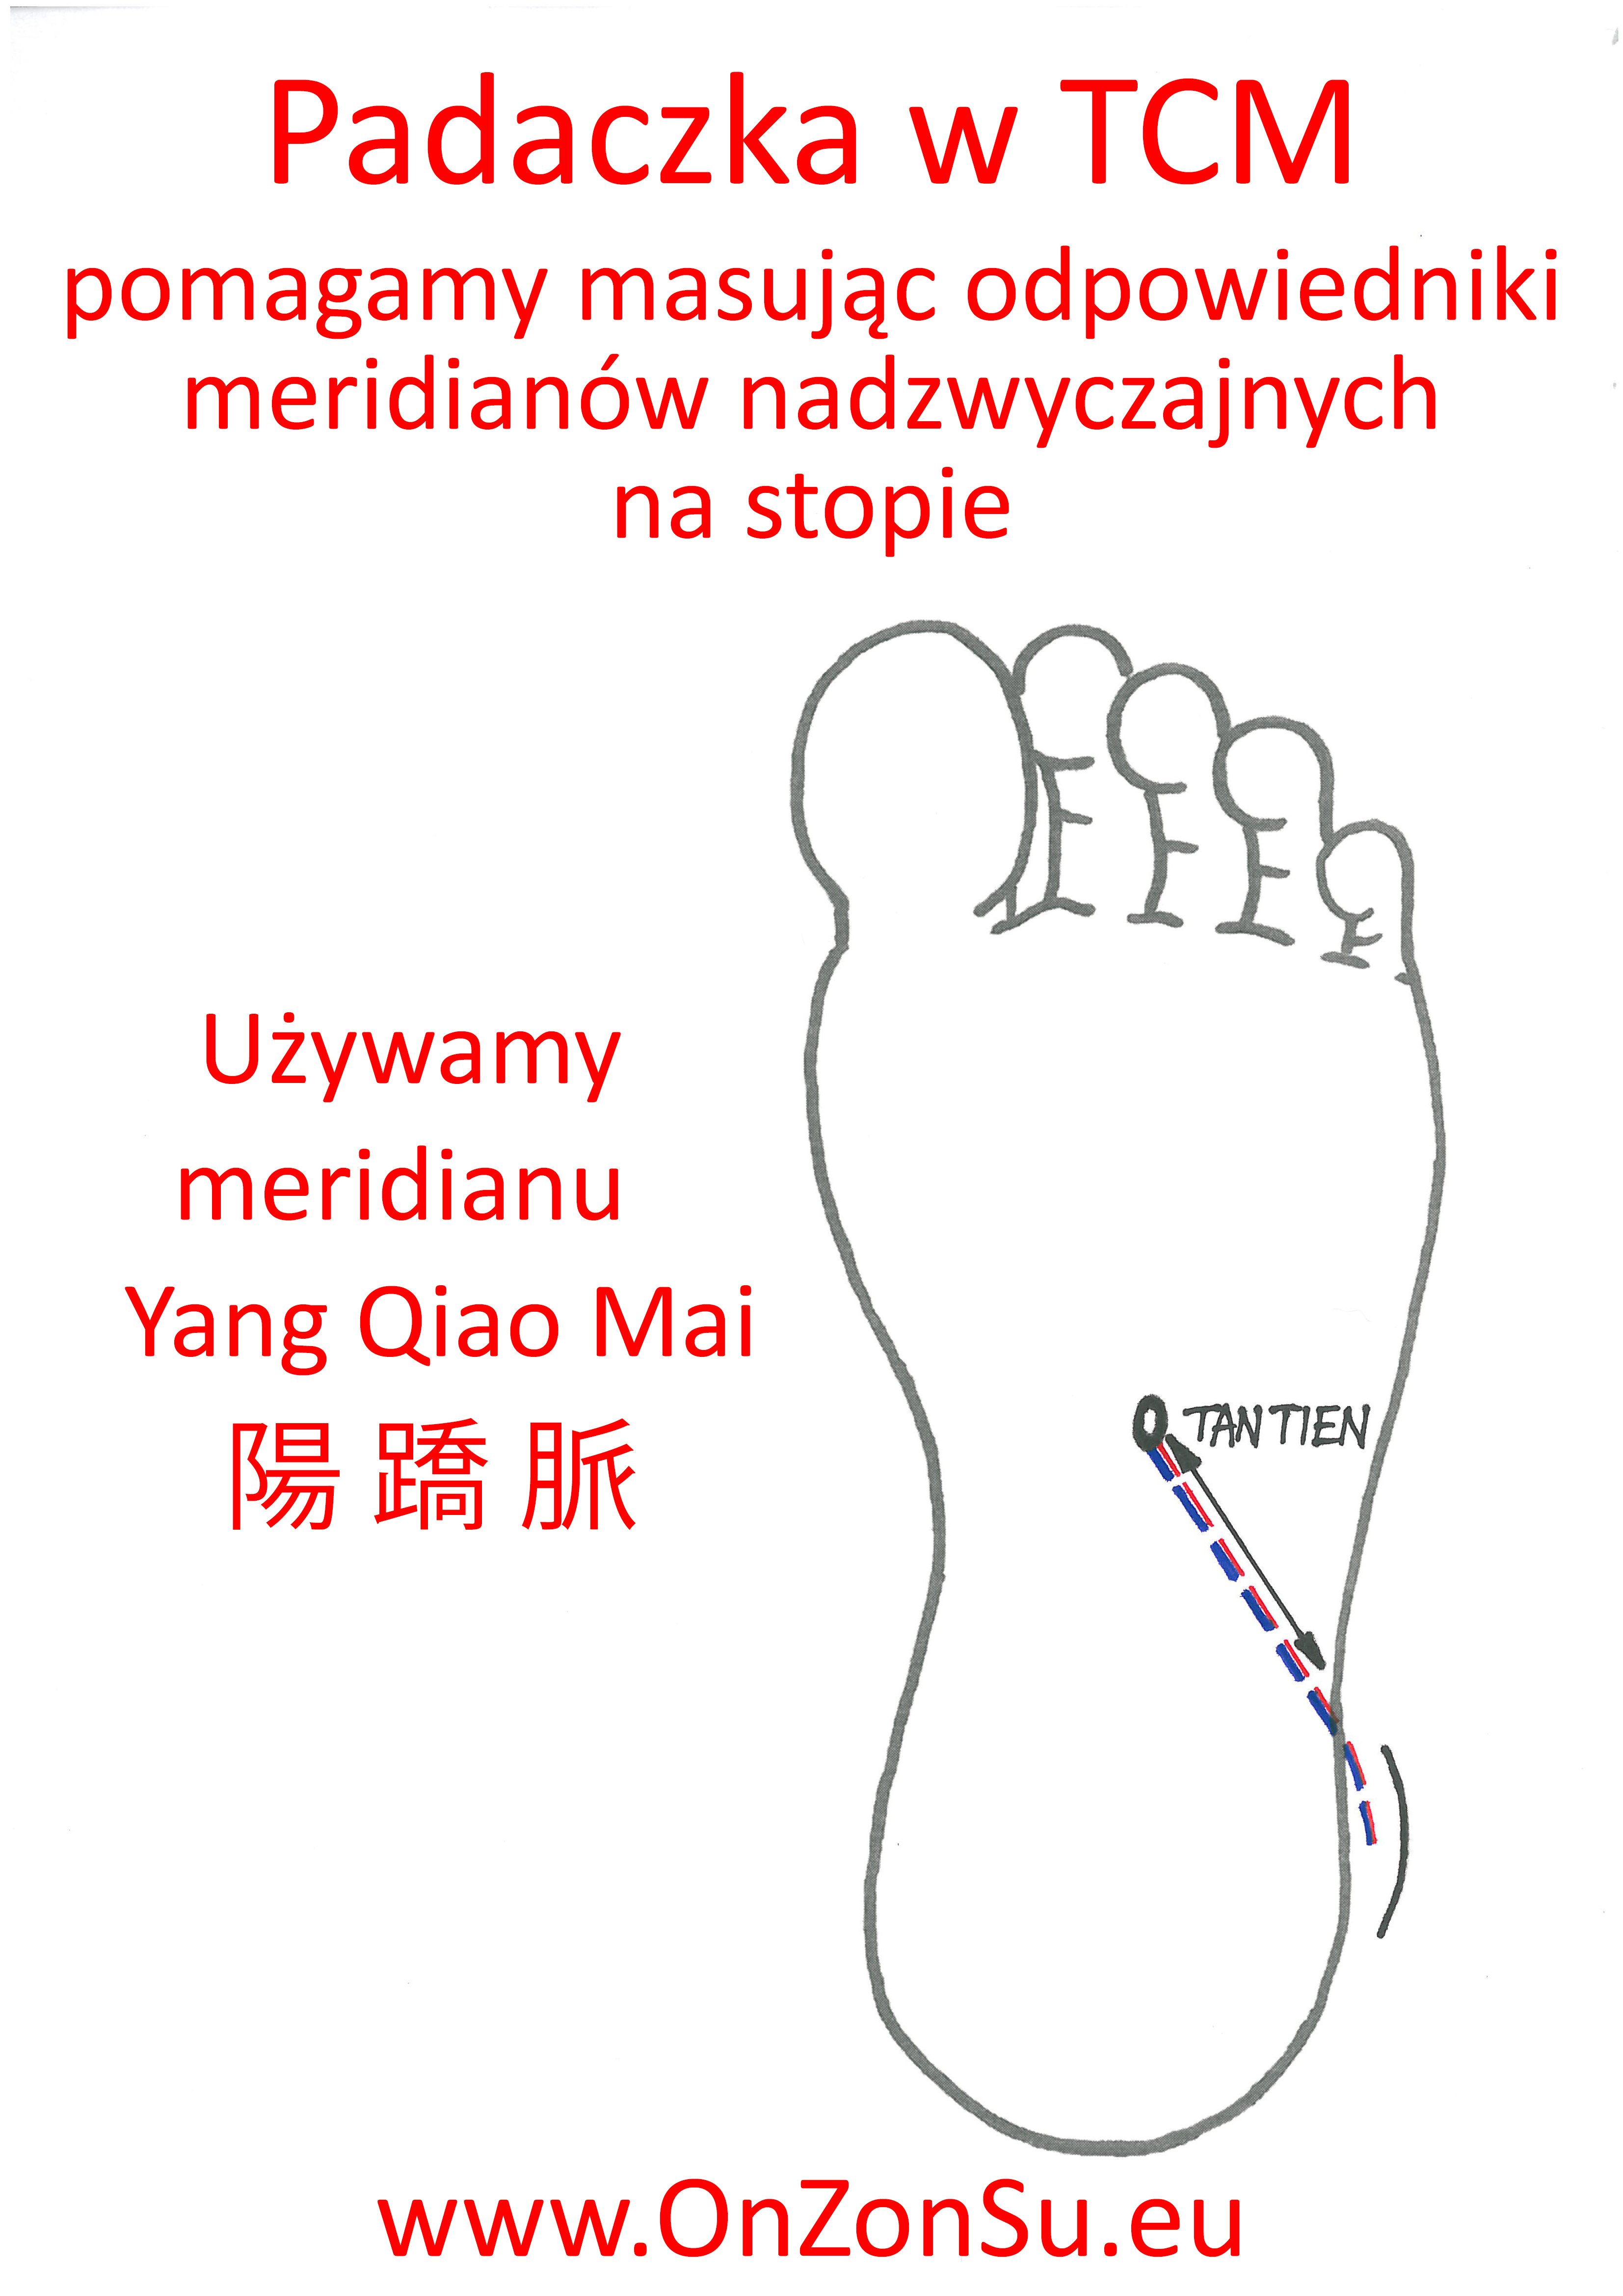 Kurs masażu stóp On Zon Su, Szkolenia refleksologii stóp - Padaczka - harmonizujemy meridian nadzwyczajny Yang Qiao Mai 陽 蹻 脈 MEM.jpg